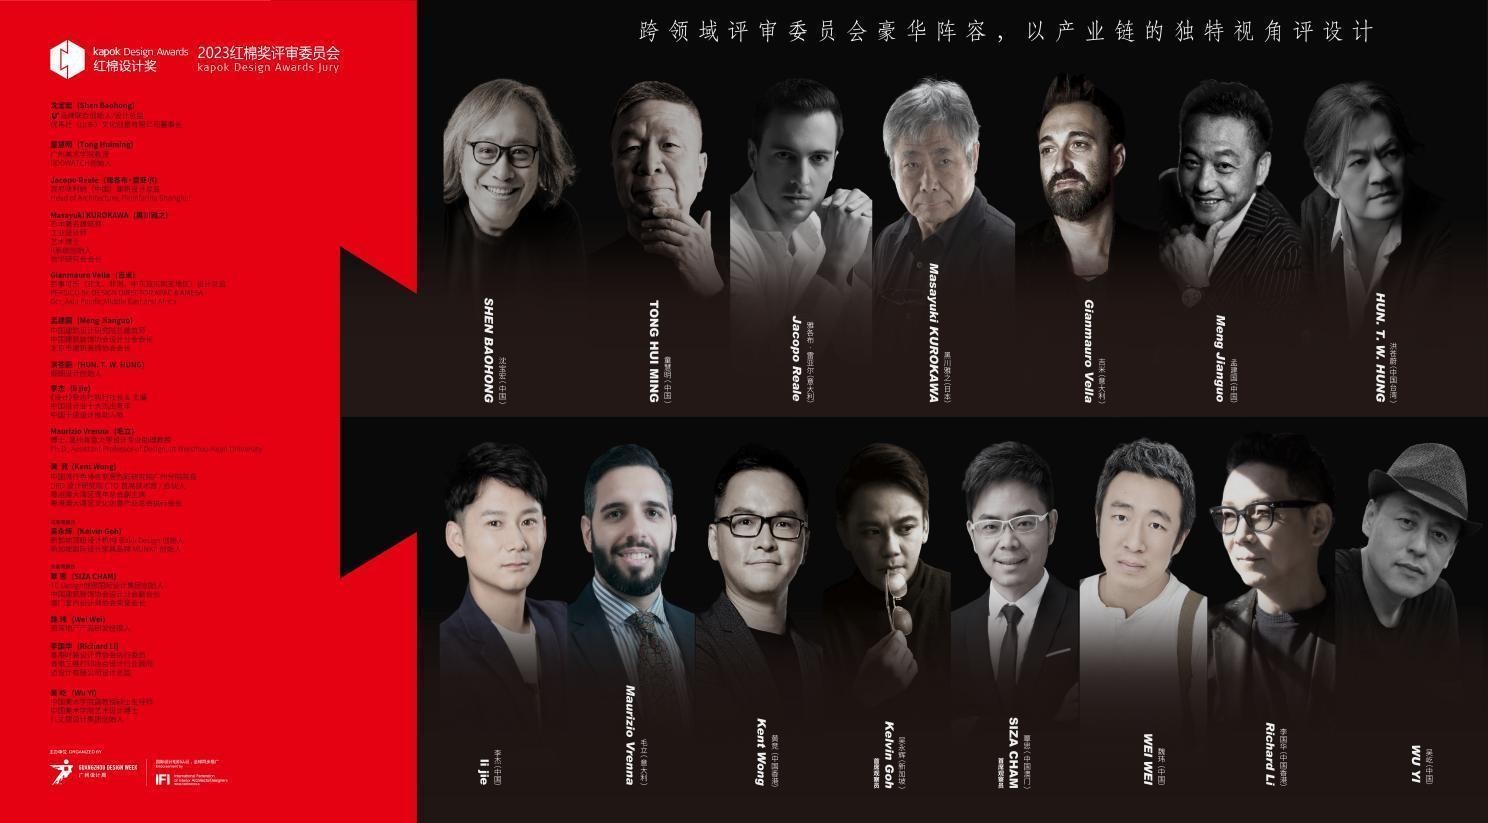 “红棉设计奖”作为广州设计周的缘起项目于2006年在政府主导下启动，是中国最具影响力的设计奖项之一。18年来，“红棉设计奖”的影响力不仅体现在对卓越设计的年度盘...